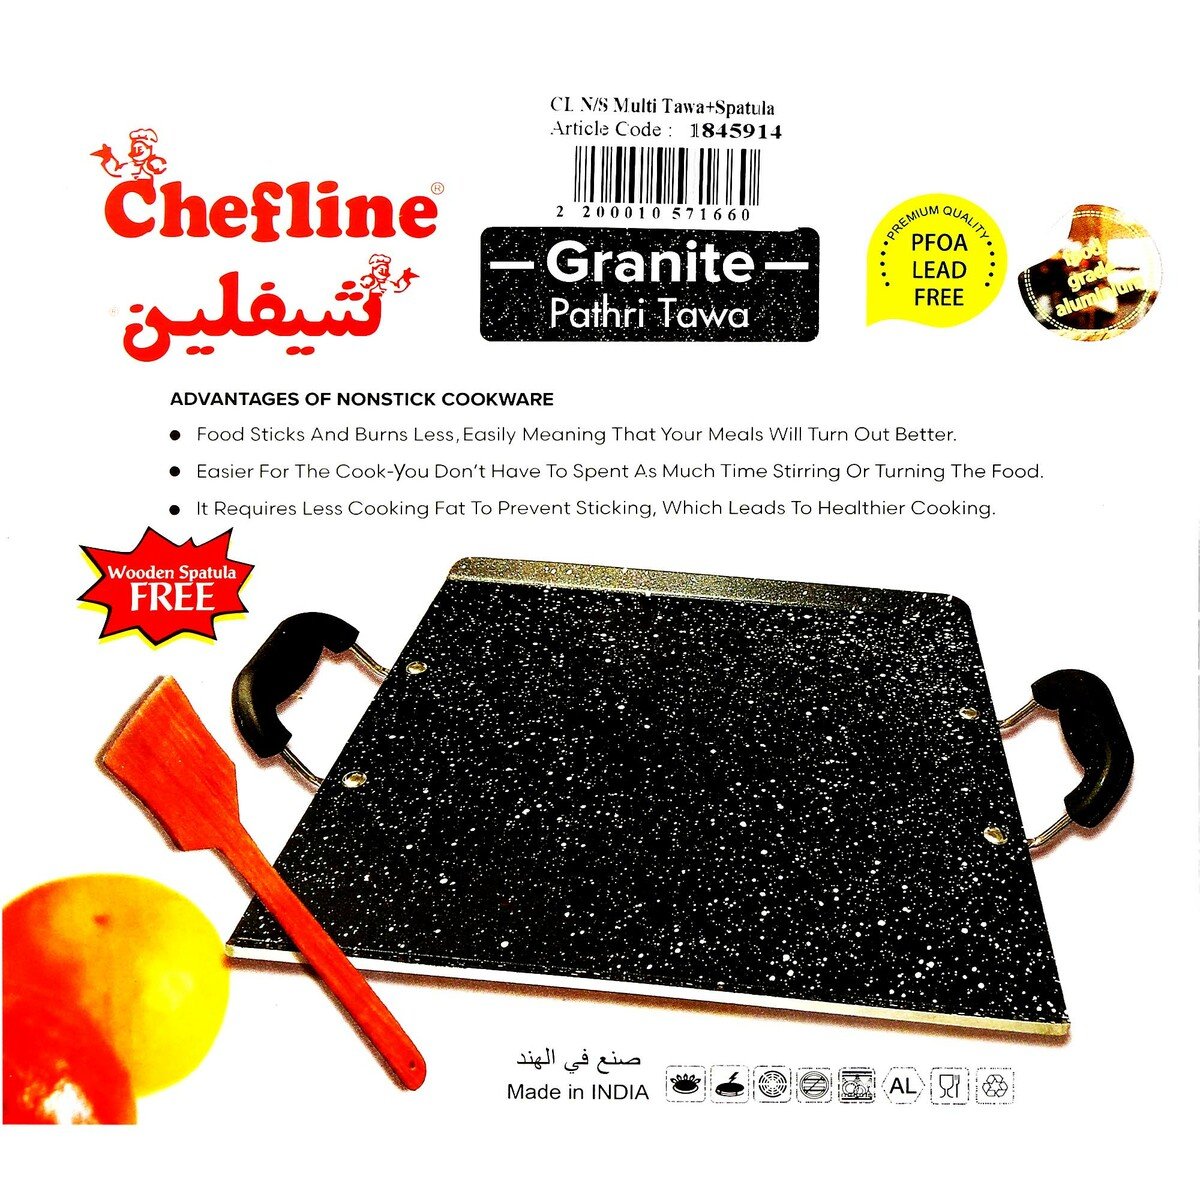 Chefline Non-Stick Multi Tawa + Spatula, 30 x 33 cm, Black